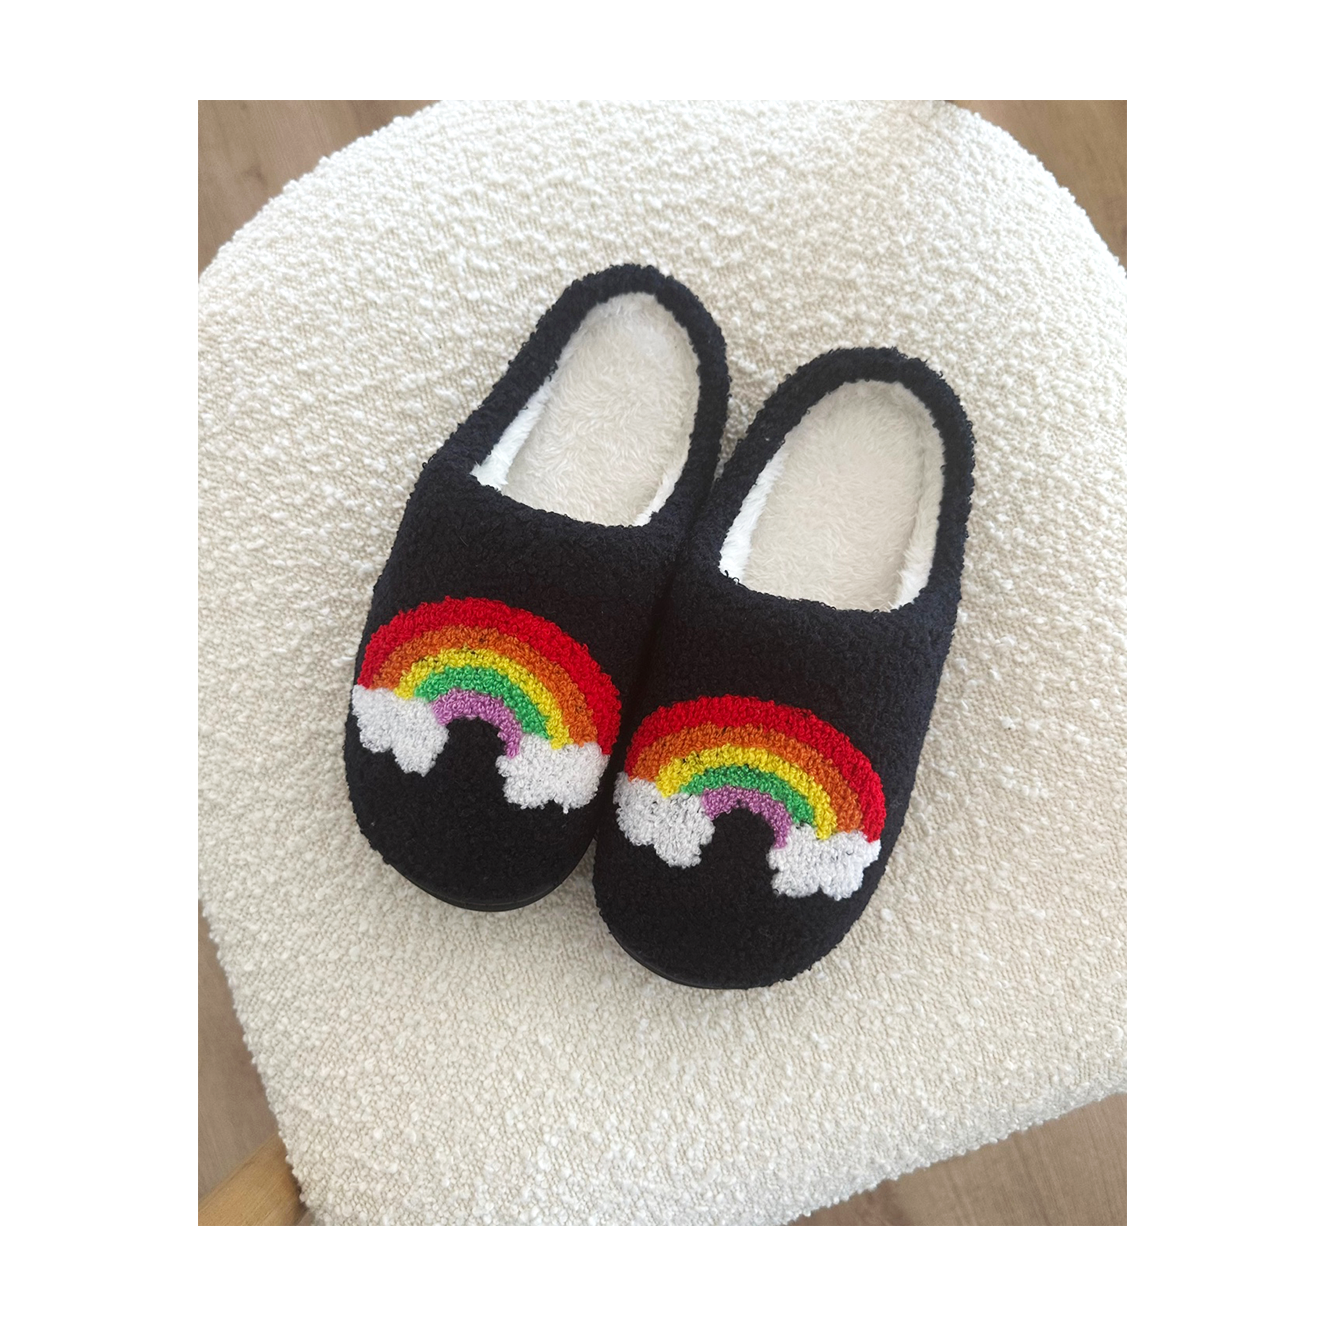 Cozy Rainbow Slippers